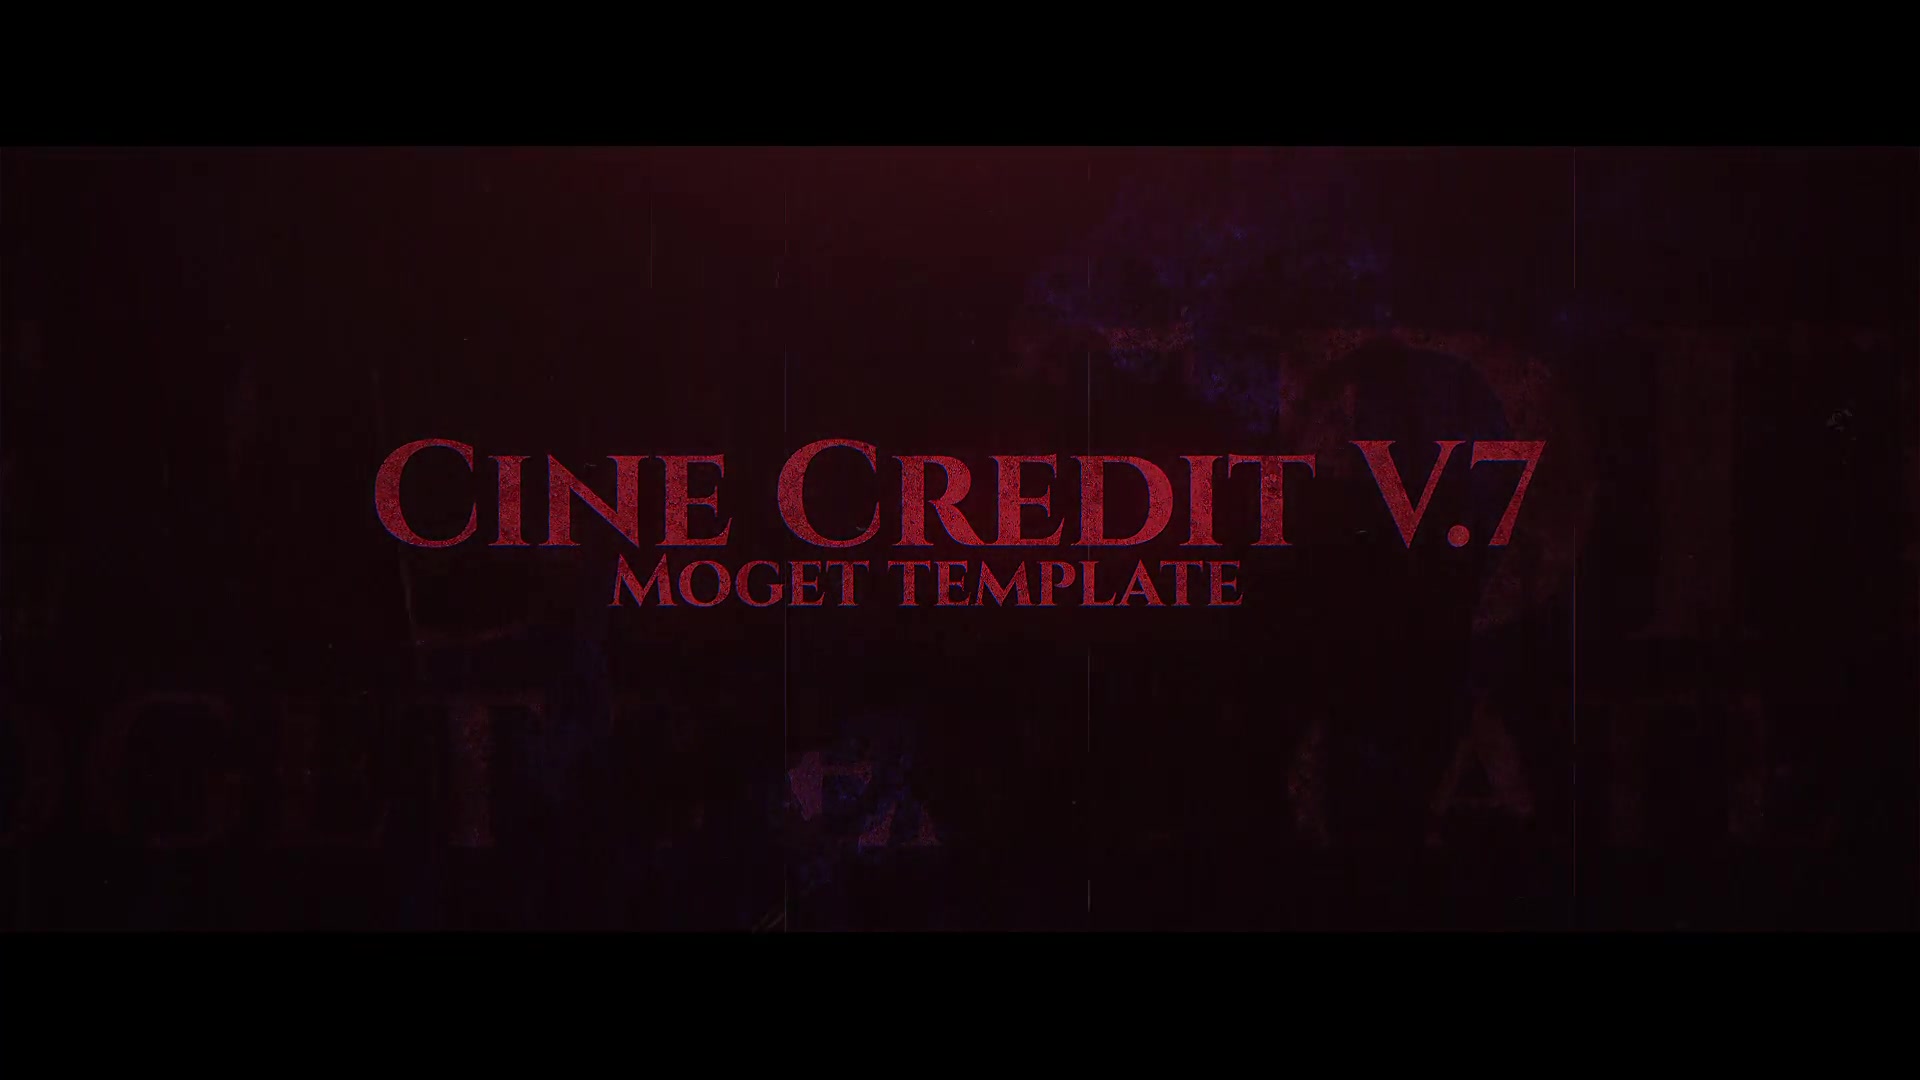 Cine Credit V.7 Videohive 25140090 Premiere Pro Image 3